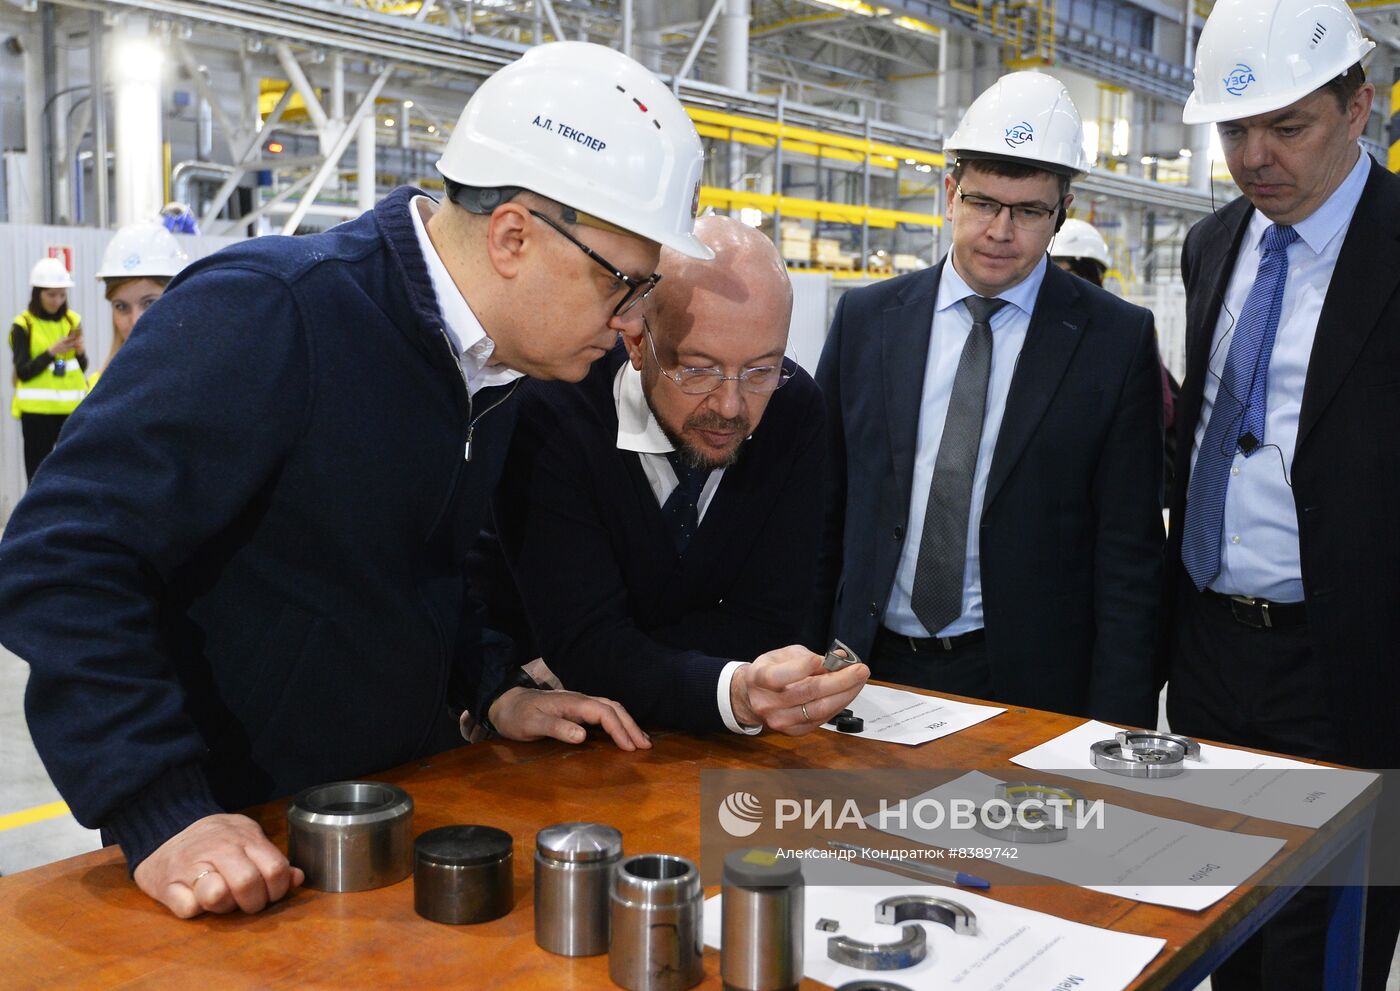 Уральский завод специального арматуростроения в Челябинске